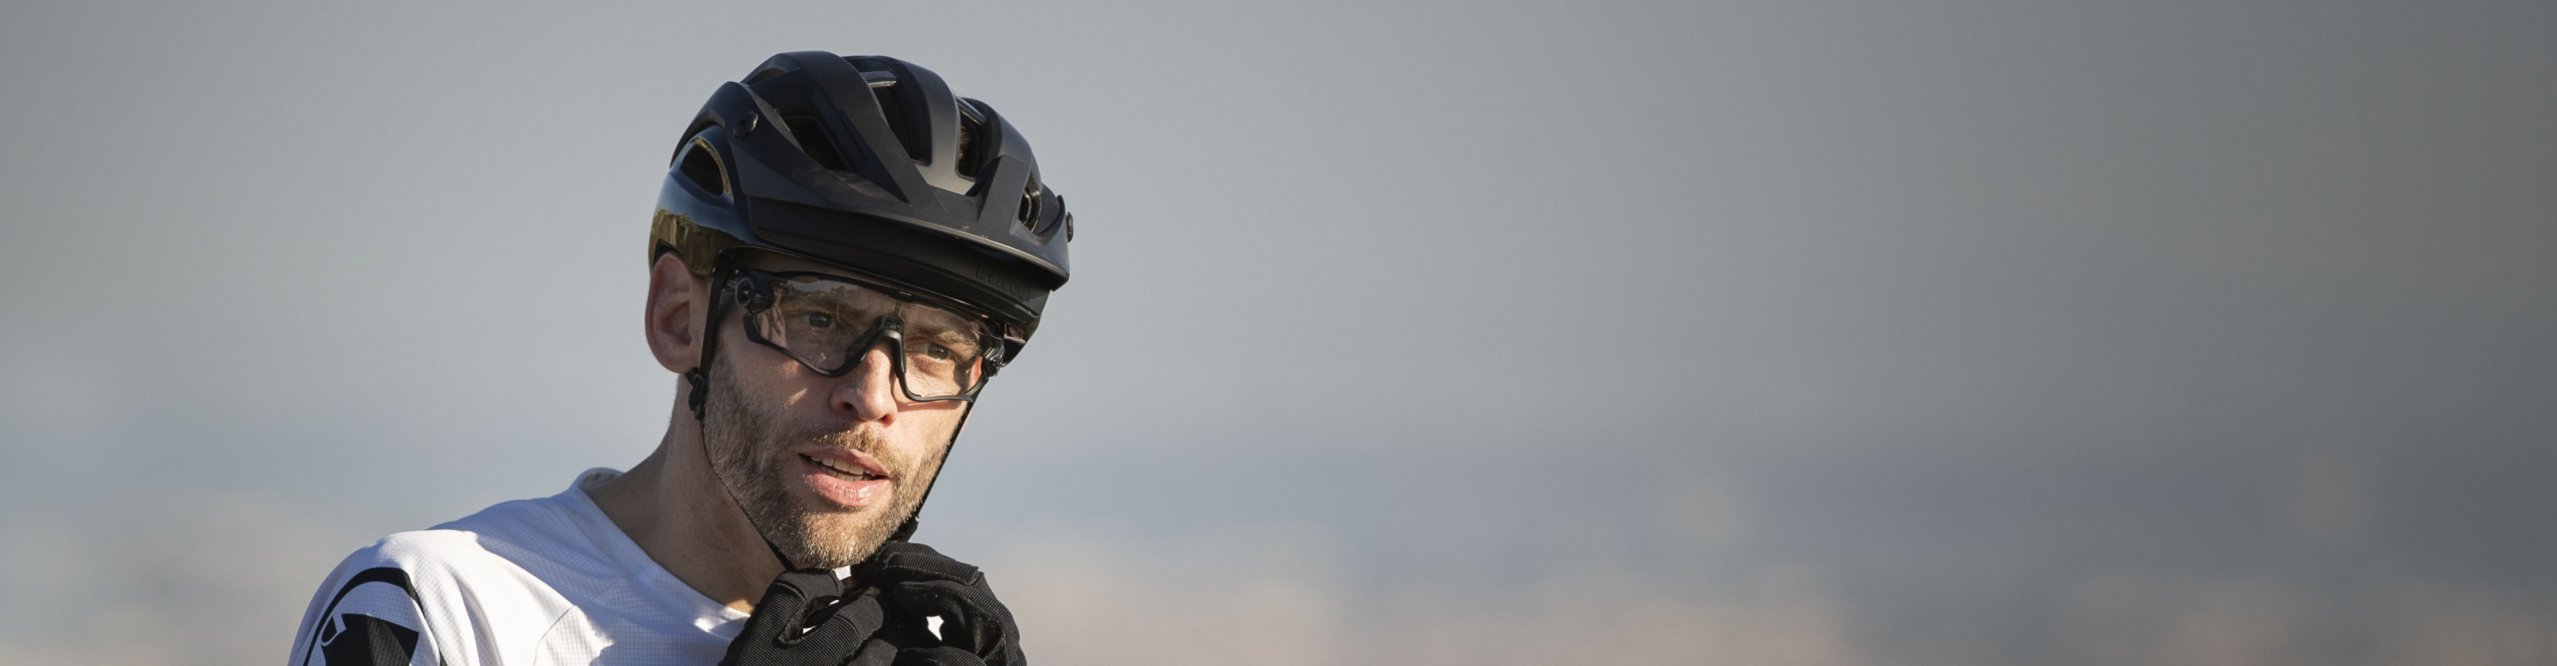 Giro MTB Helm wird verschlossen